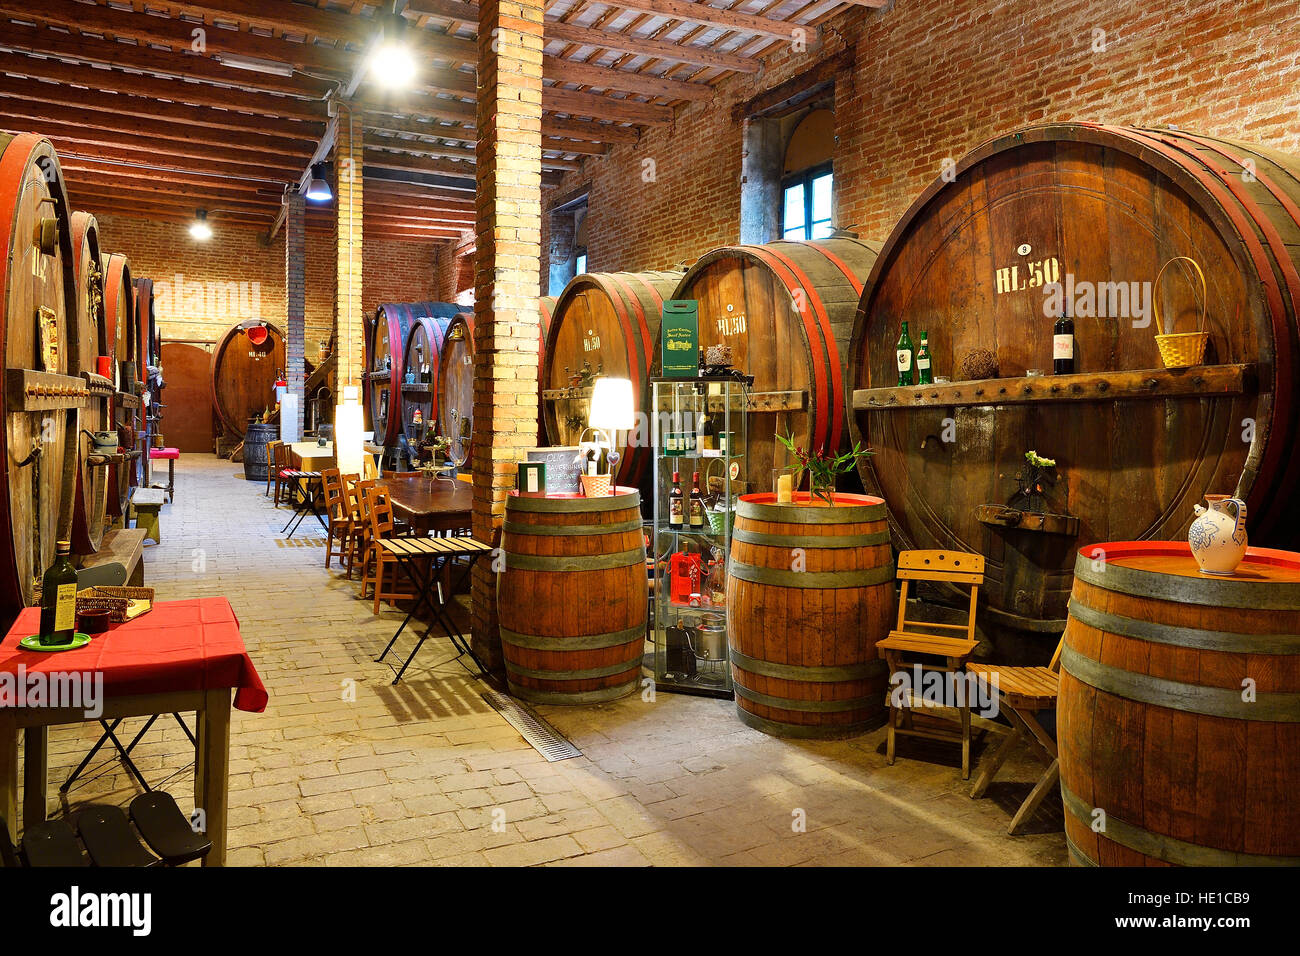 Barrels in cellar, Antica Cantina San't Amico winery, Morro D'Alba, Marche, Italy Stock Photo